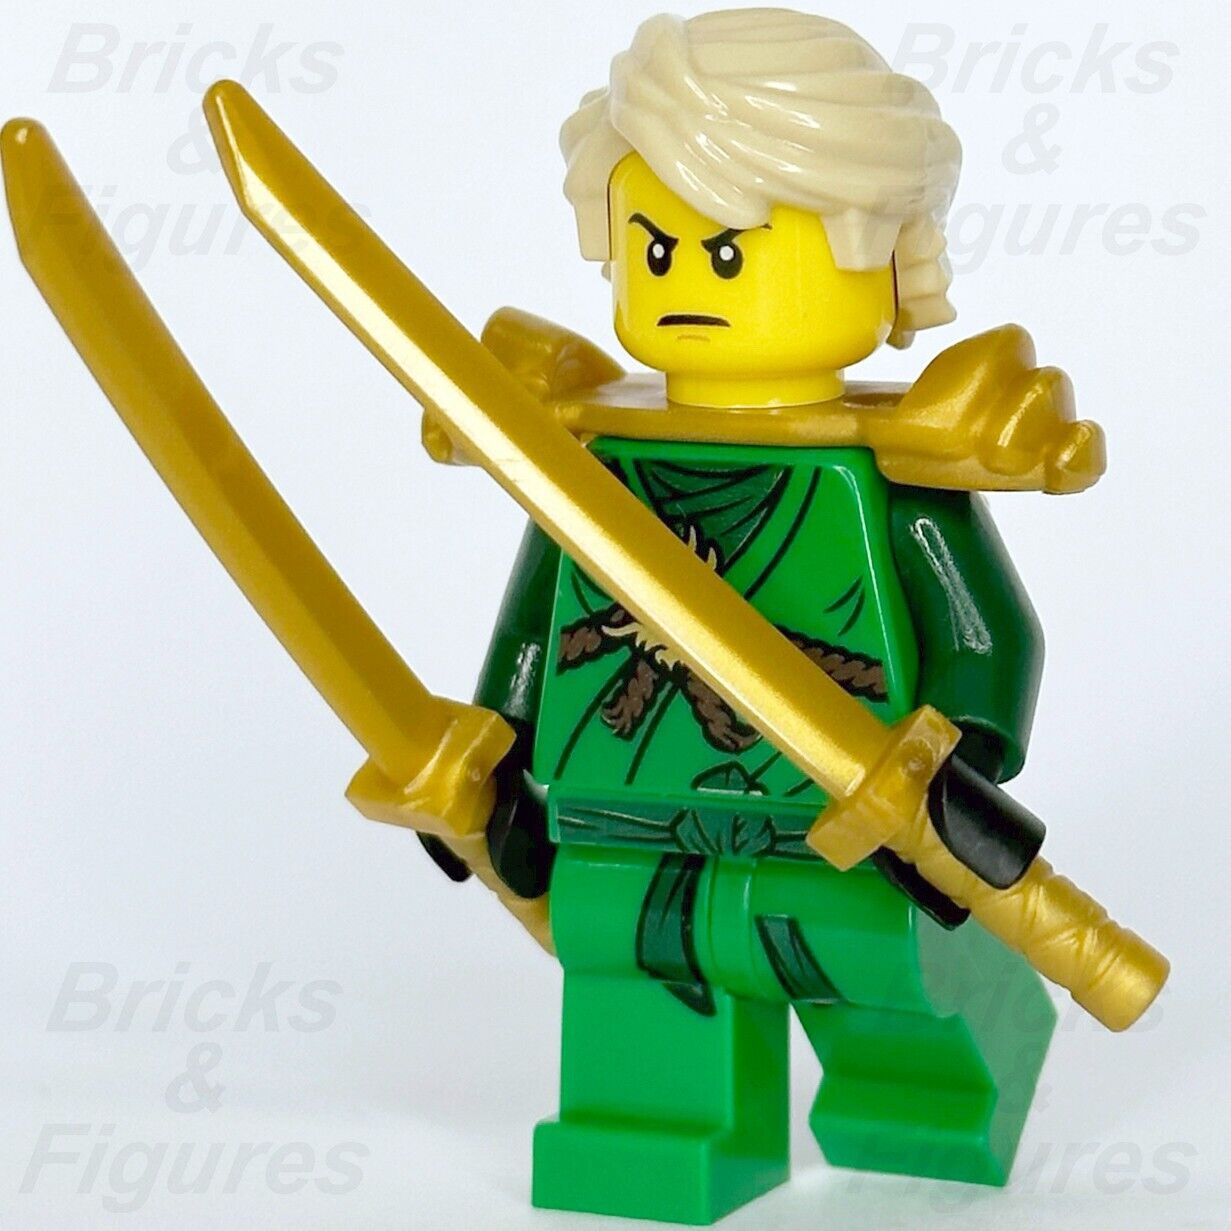 LEGO Ninjago Lloyd Garmadon Minifigure Green Ninja Day of the Departed 891725 - Bricks & Figures